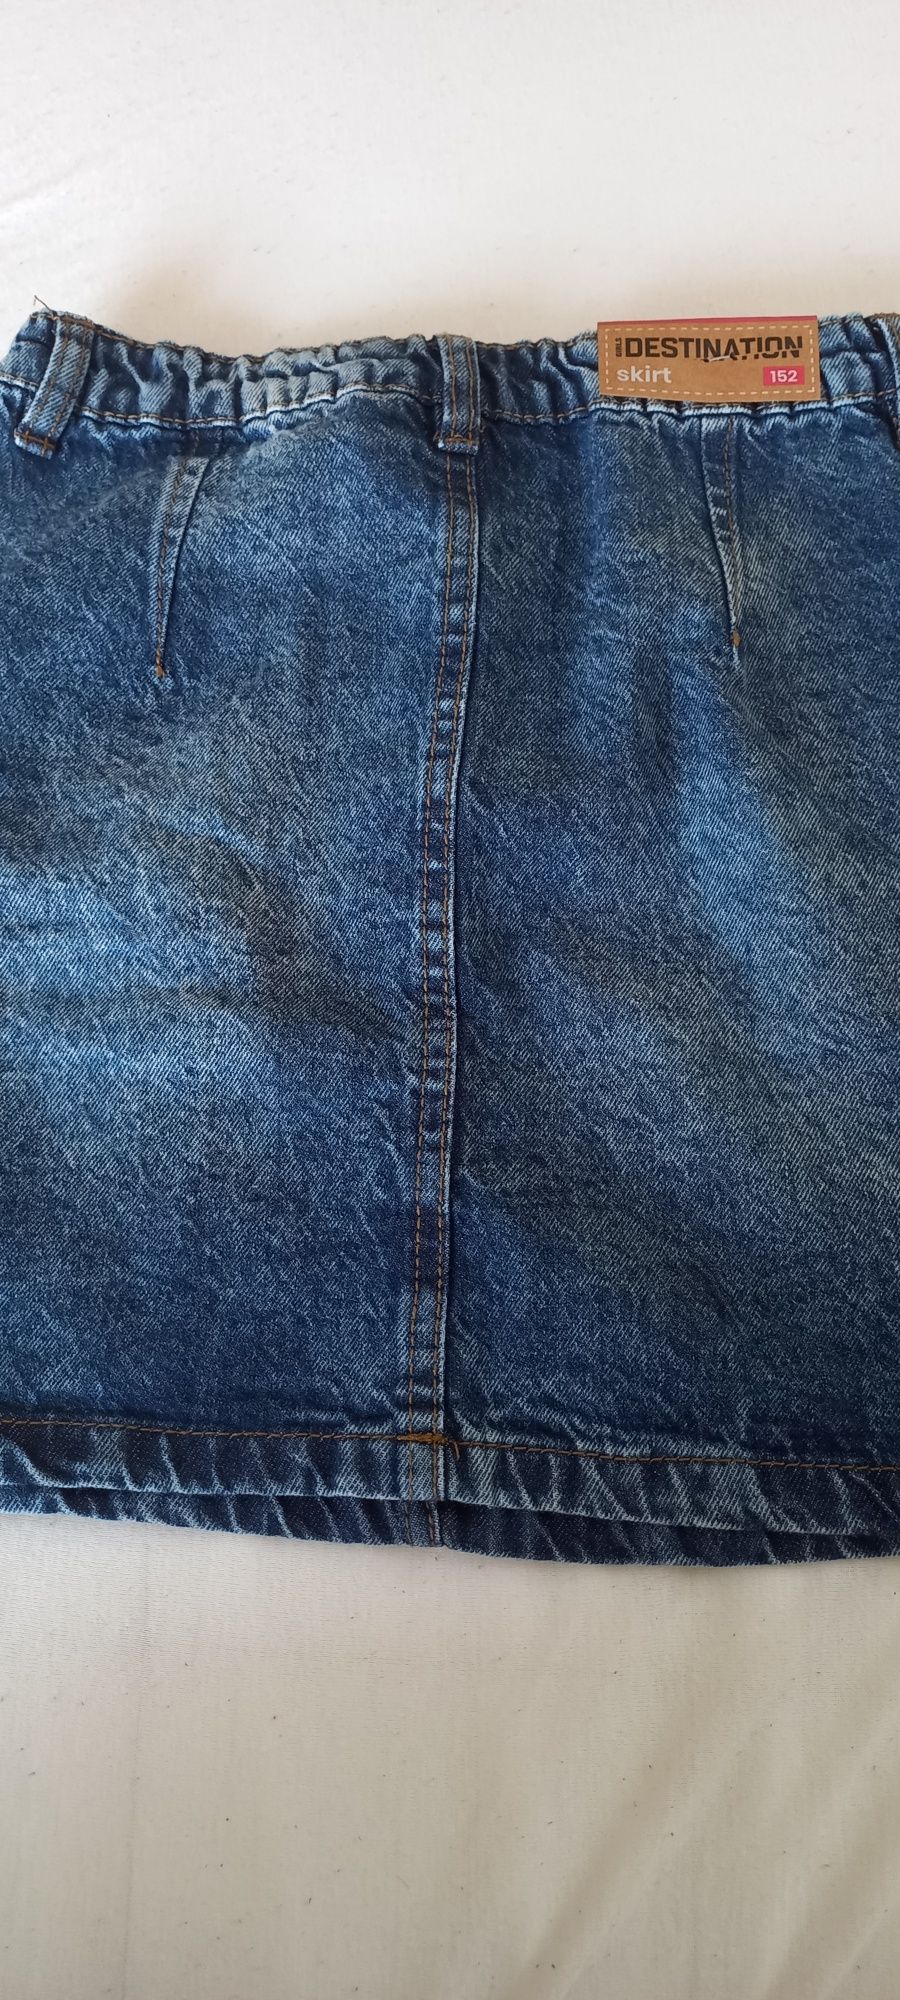 Spódnica jeansową 152 nowa